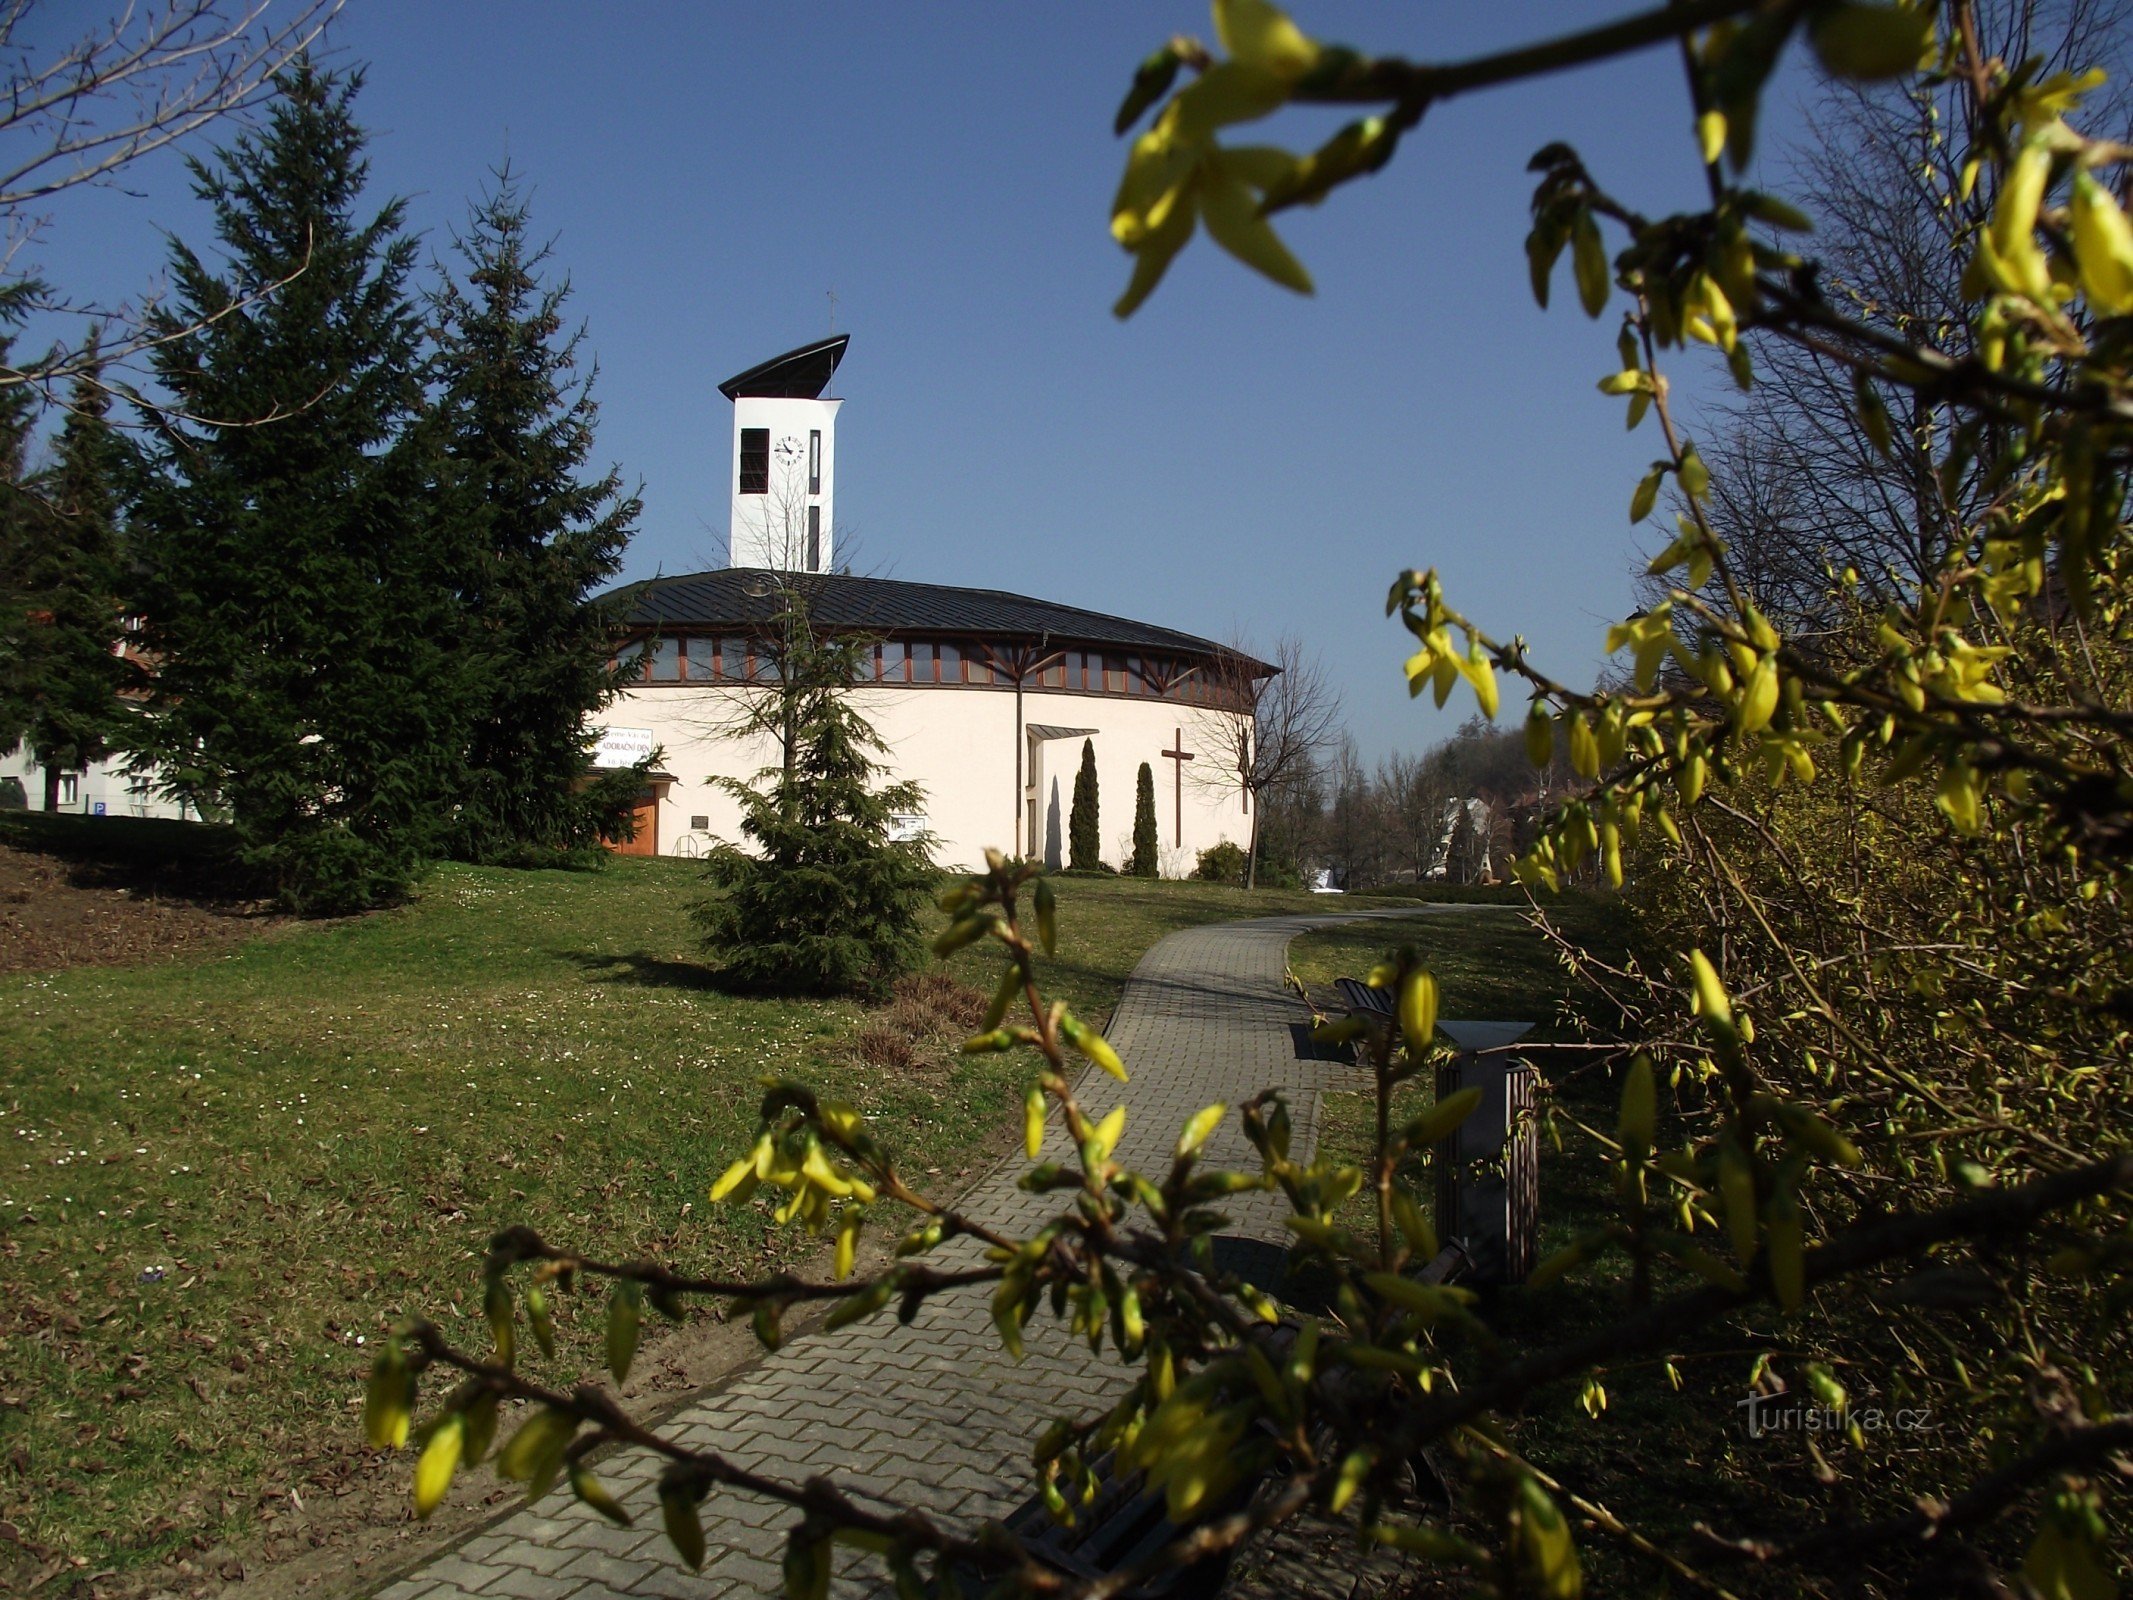 Luhačovice – Biserica Sfintei Familii (Biserica Sf. Iosif)